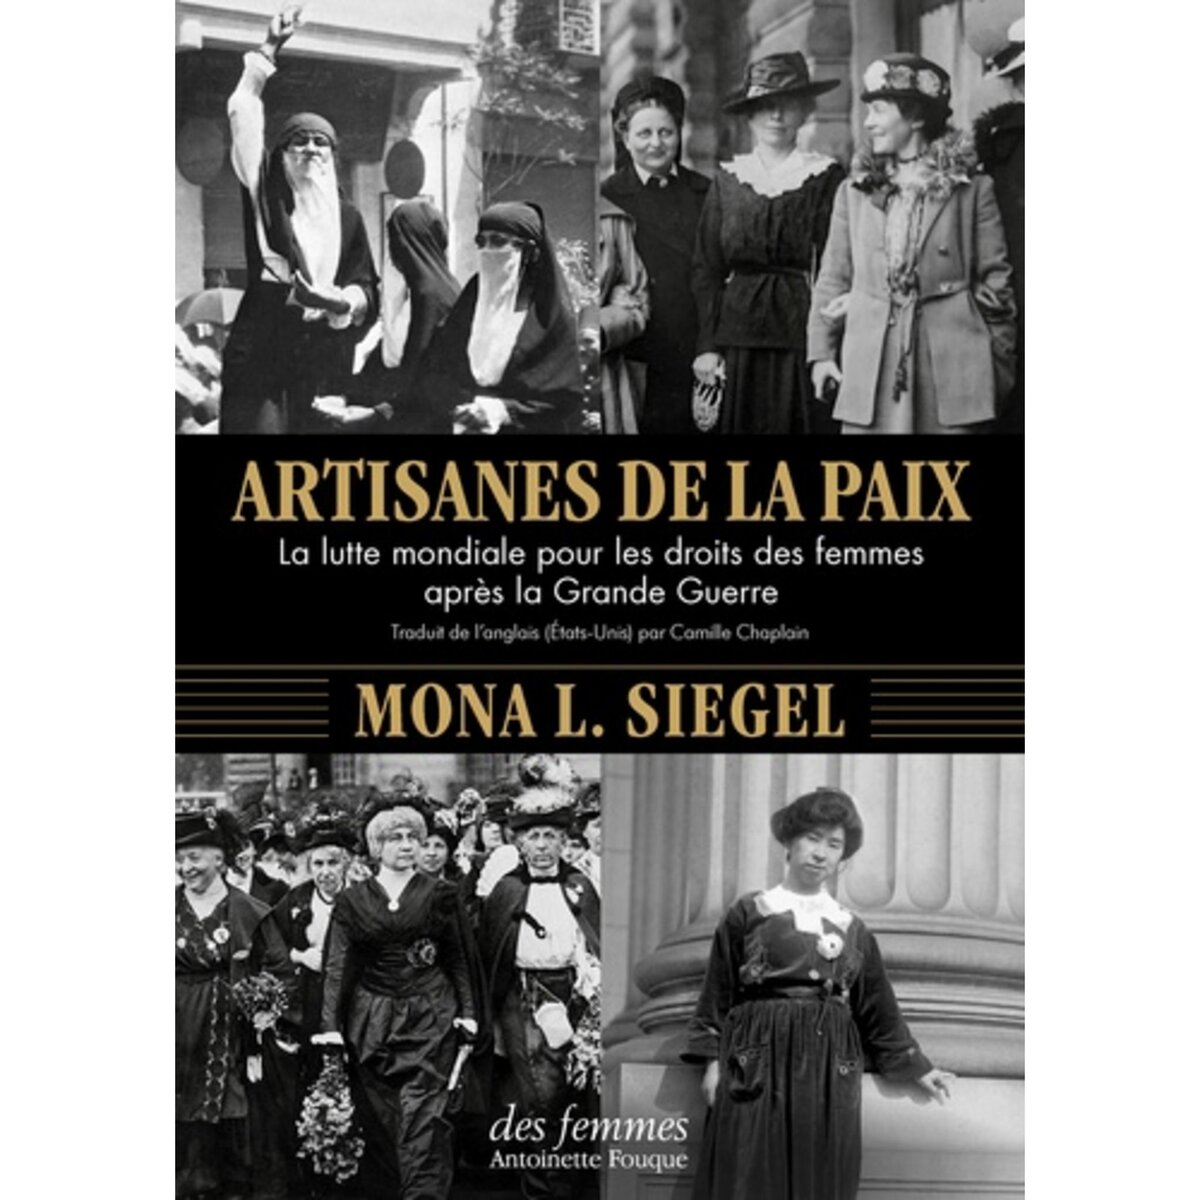  ARTISANES DE LA PAIX. LA LUTTE MONDIALE POUR LES DROITS DES FEMMES APRES LA GRANDE GUERRE, Siegel Mona L.